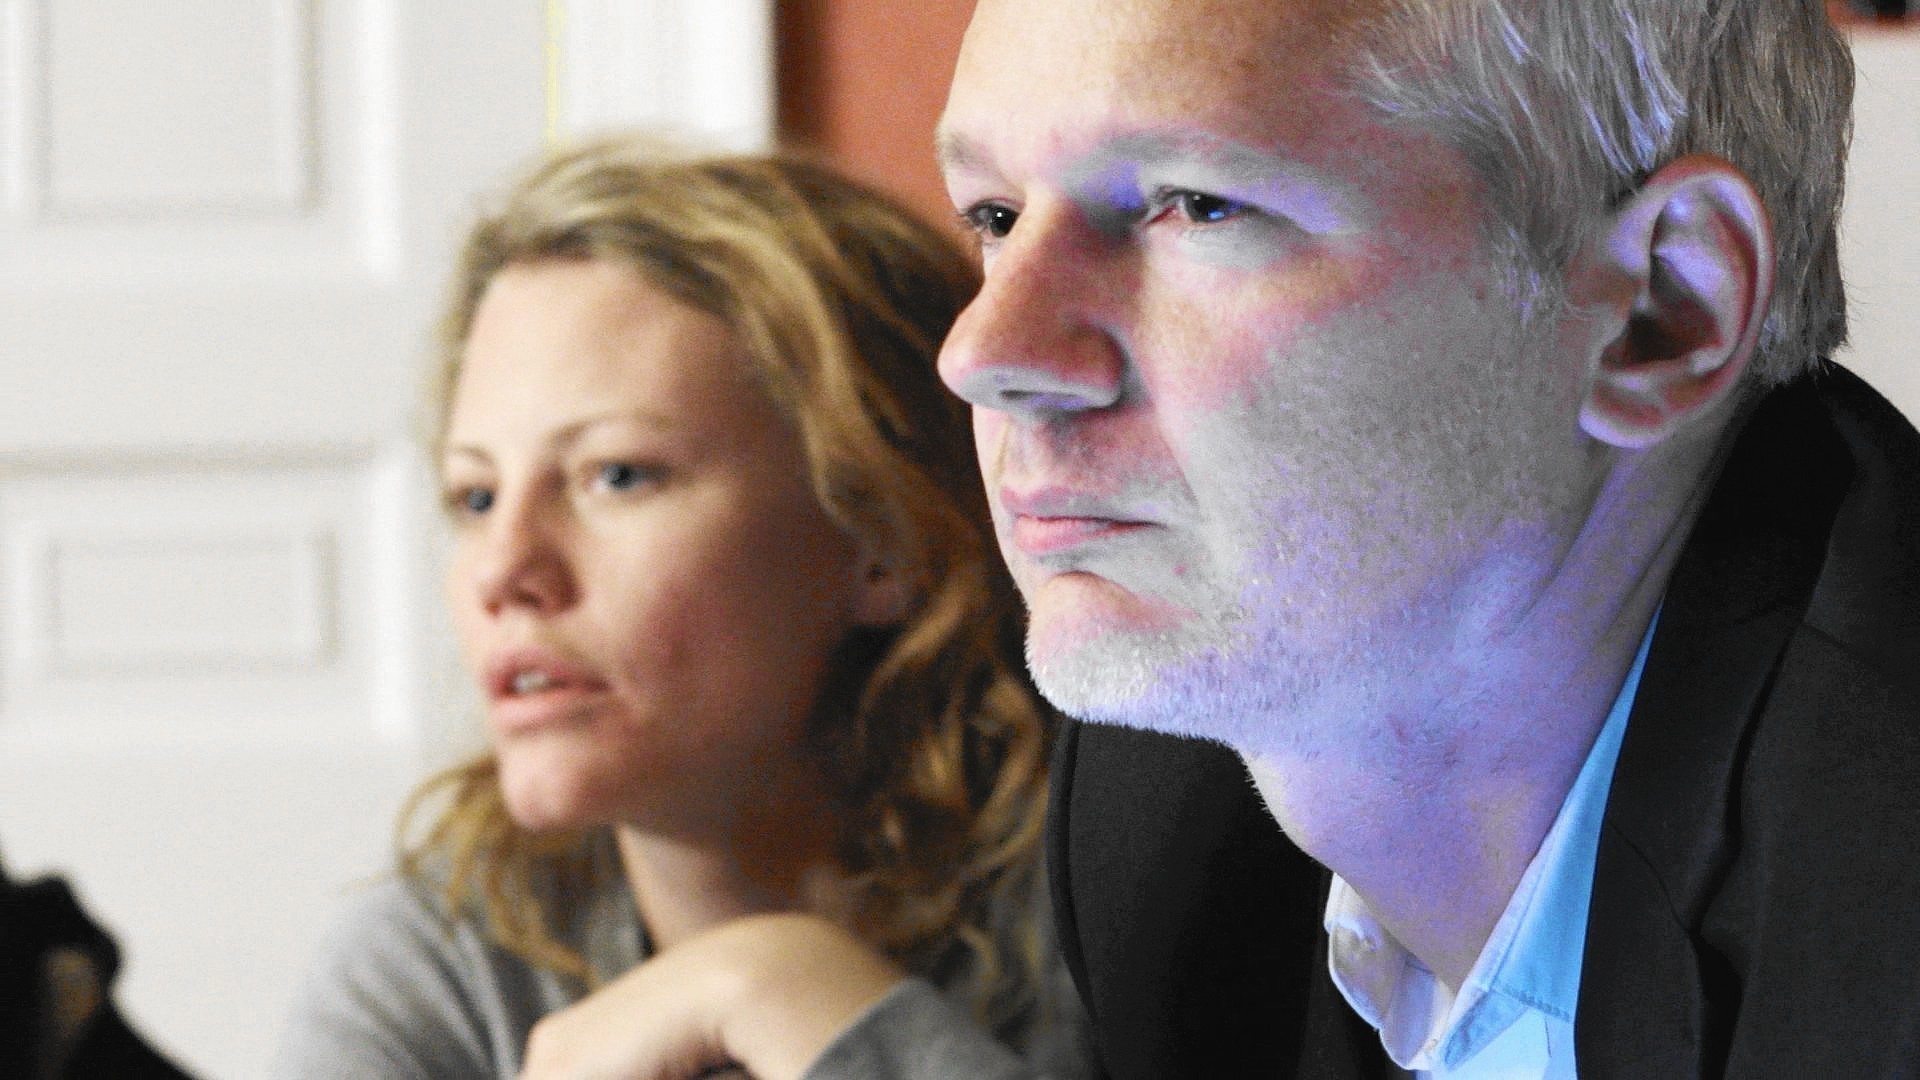 'Risk' review: Julian Assange doc raises many questions 